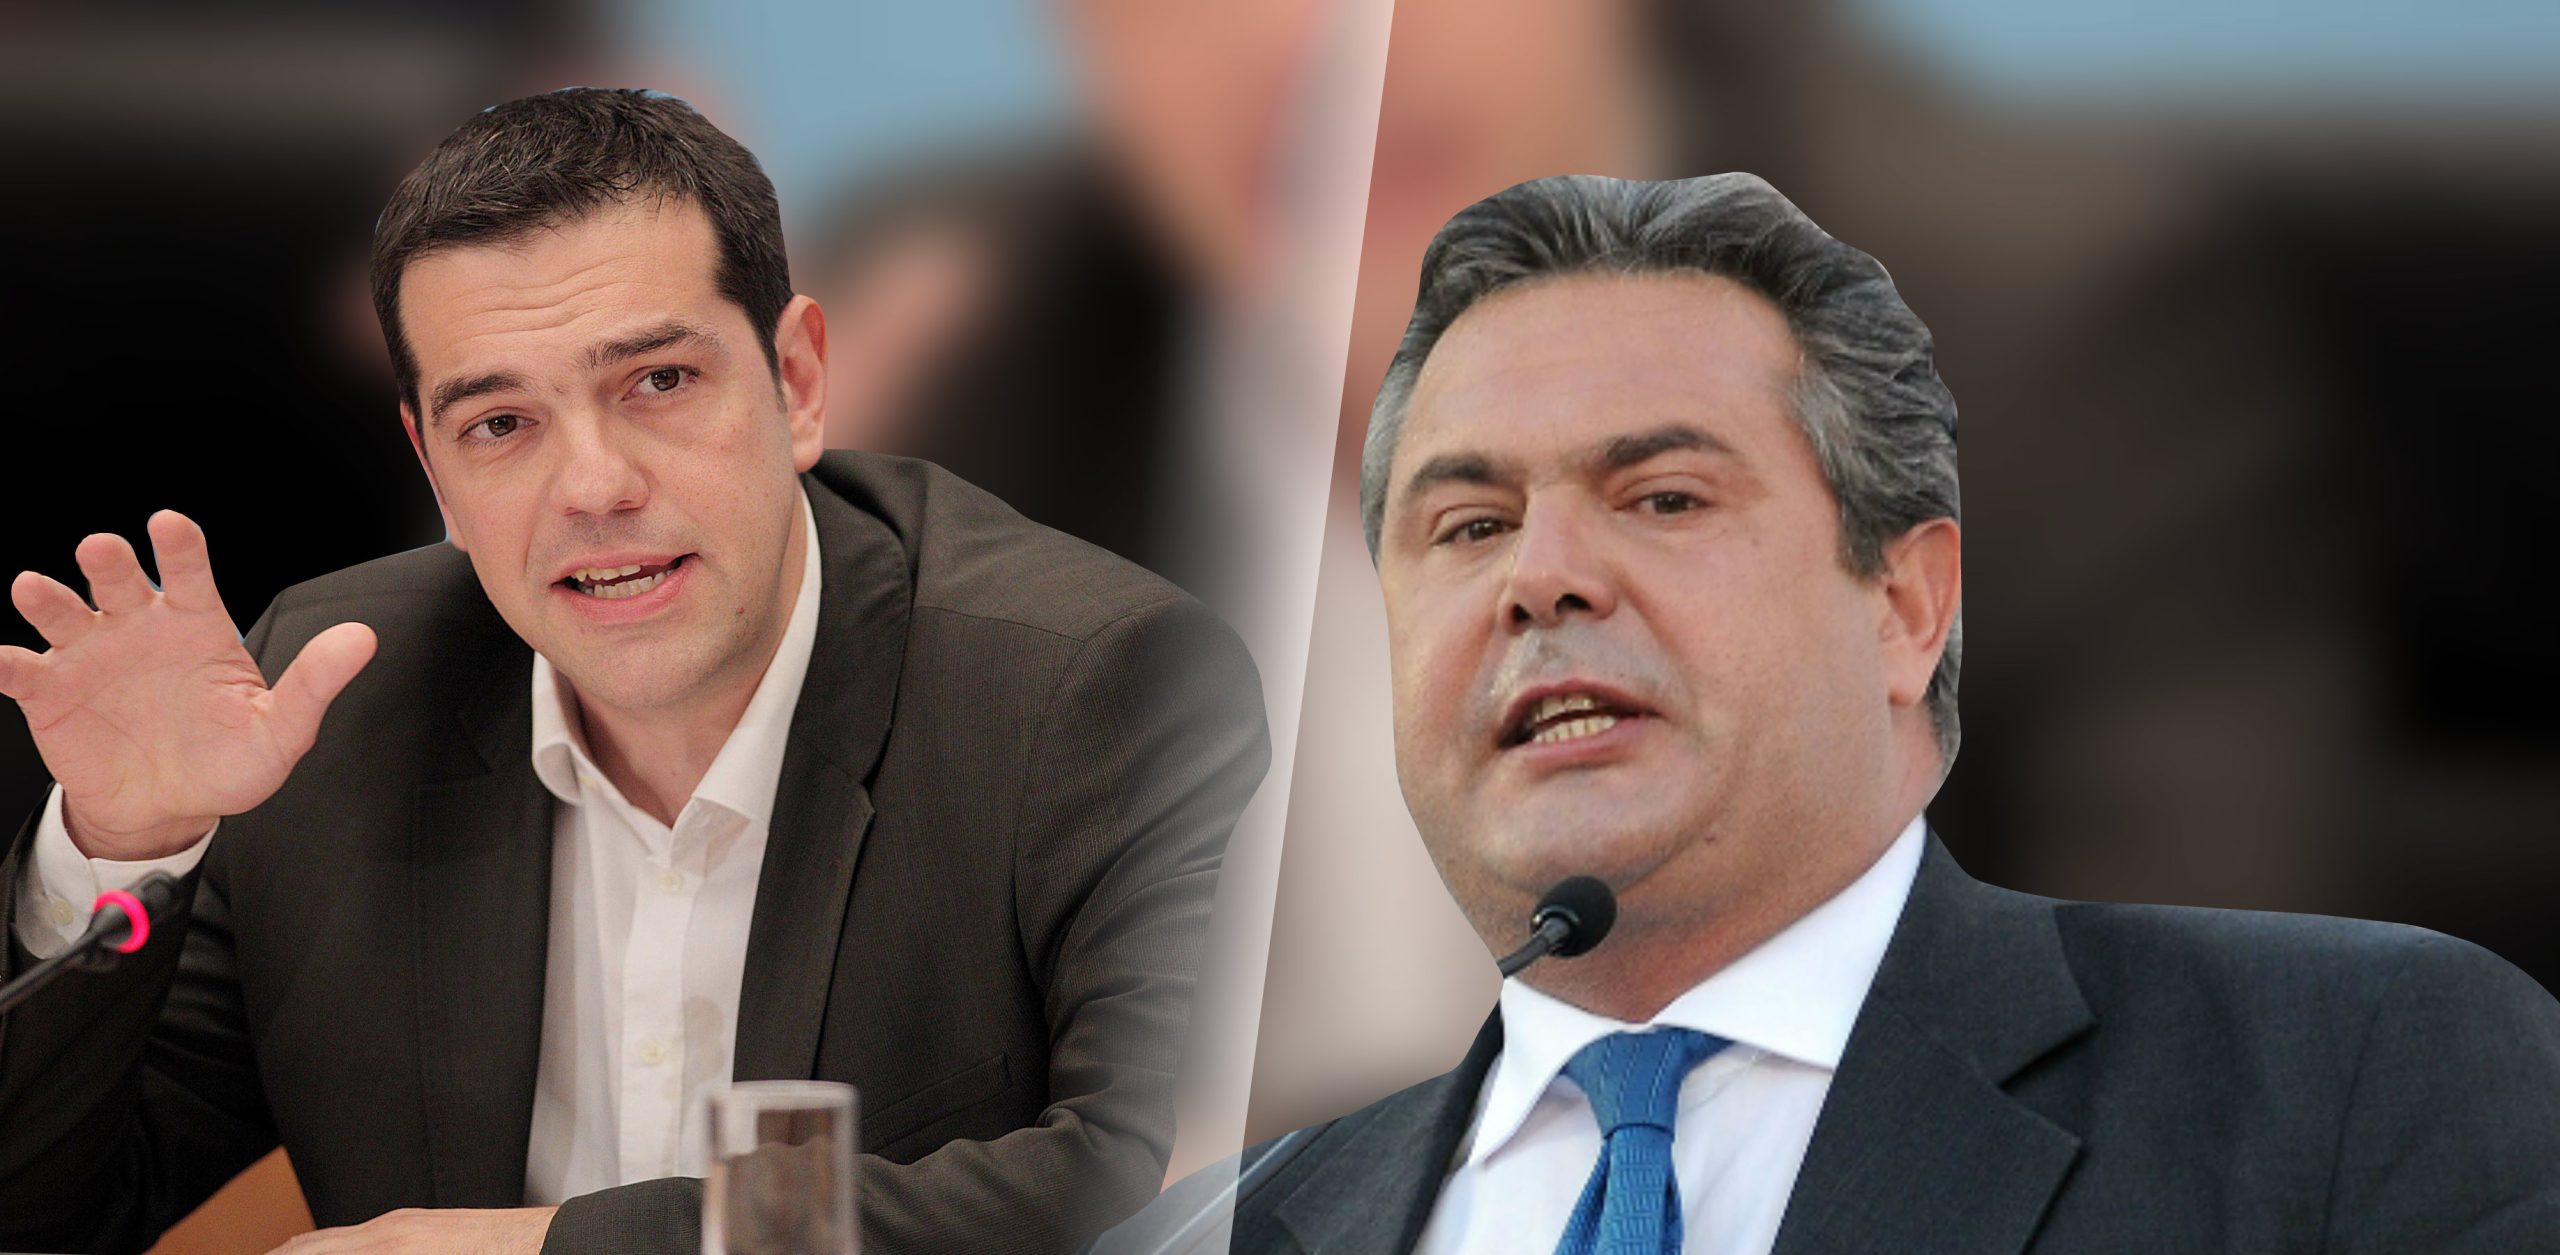 Οι ΑΝΕΛ «μπλοκάρουν» ξανά τον ΣΥΡΙΖΑ: Η κυβέρνηση δεν έχει δεδηλωμένη για να νομοθετεί